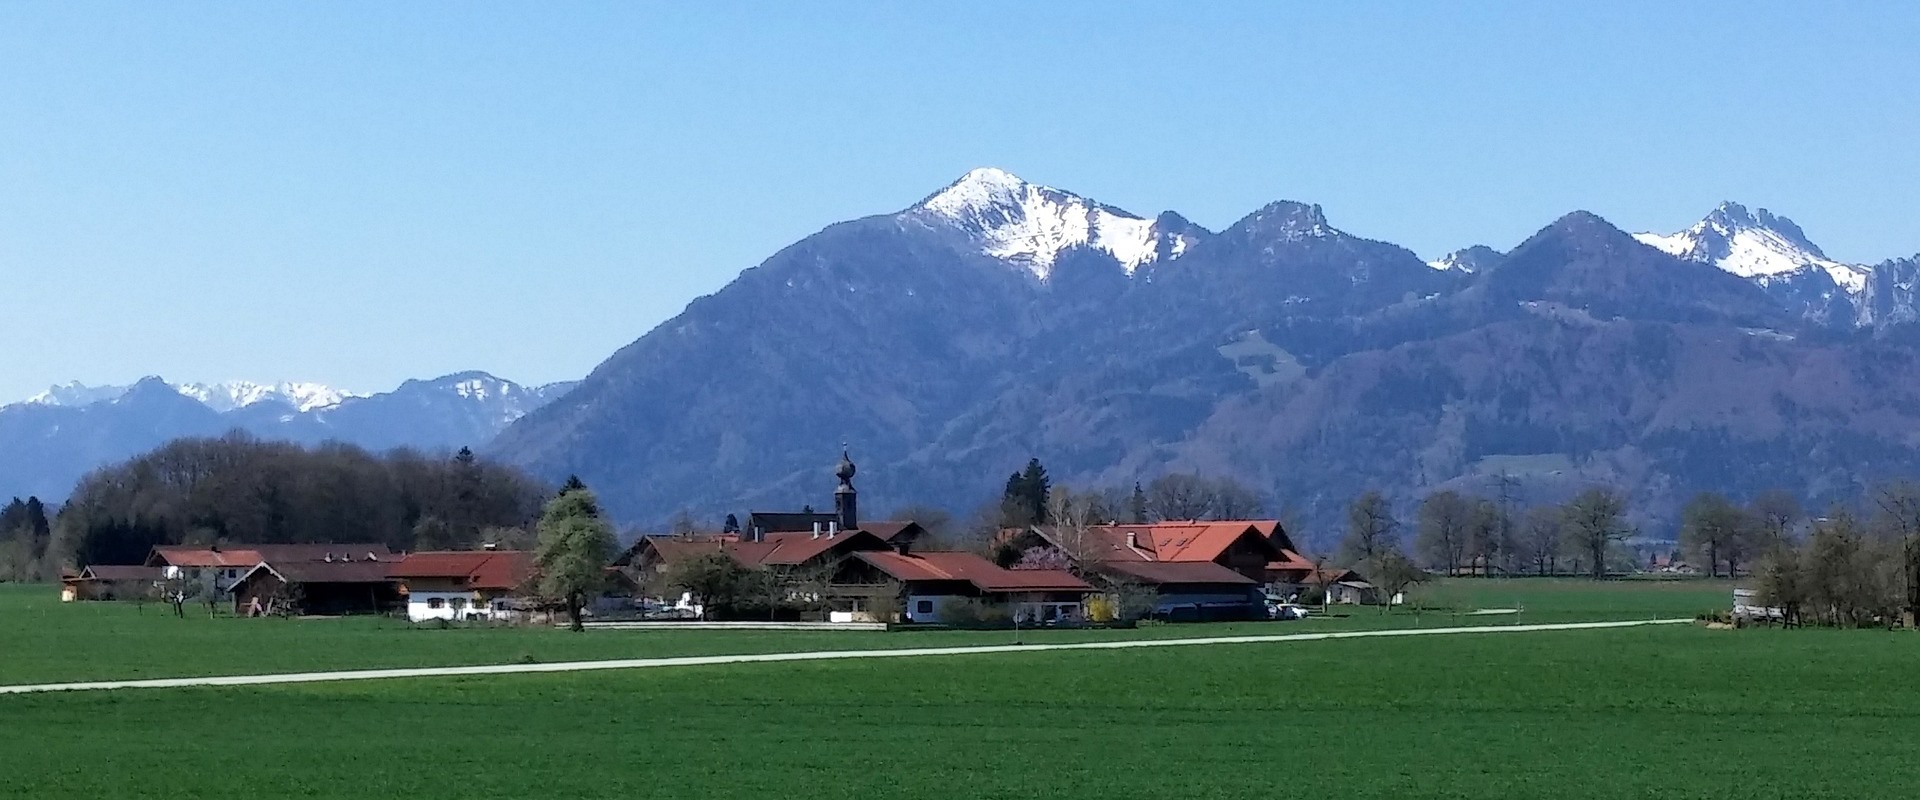 Ein Dorf im Chiemgau vor schneebedeckten Alpen.